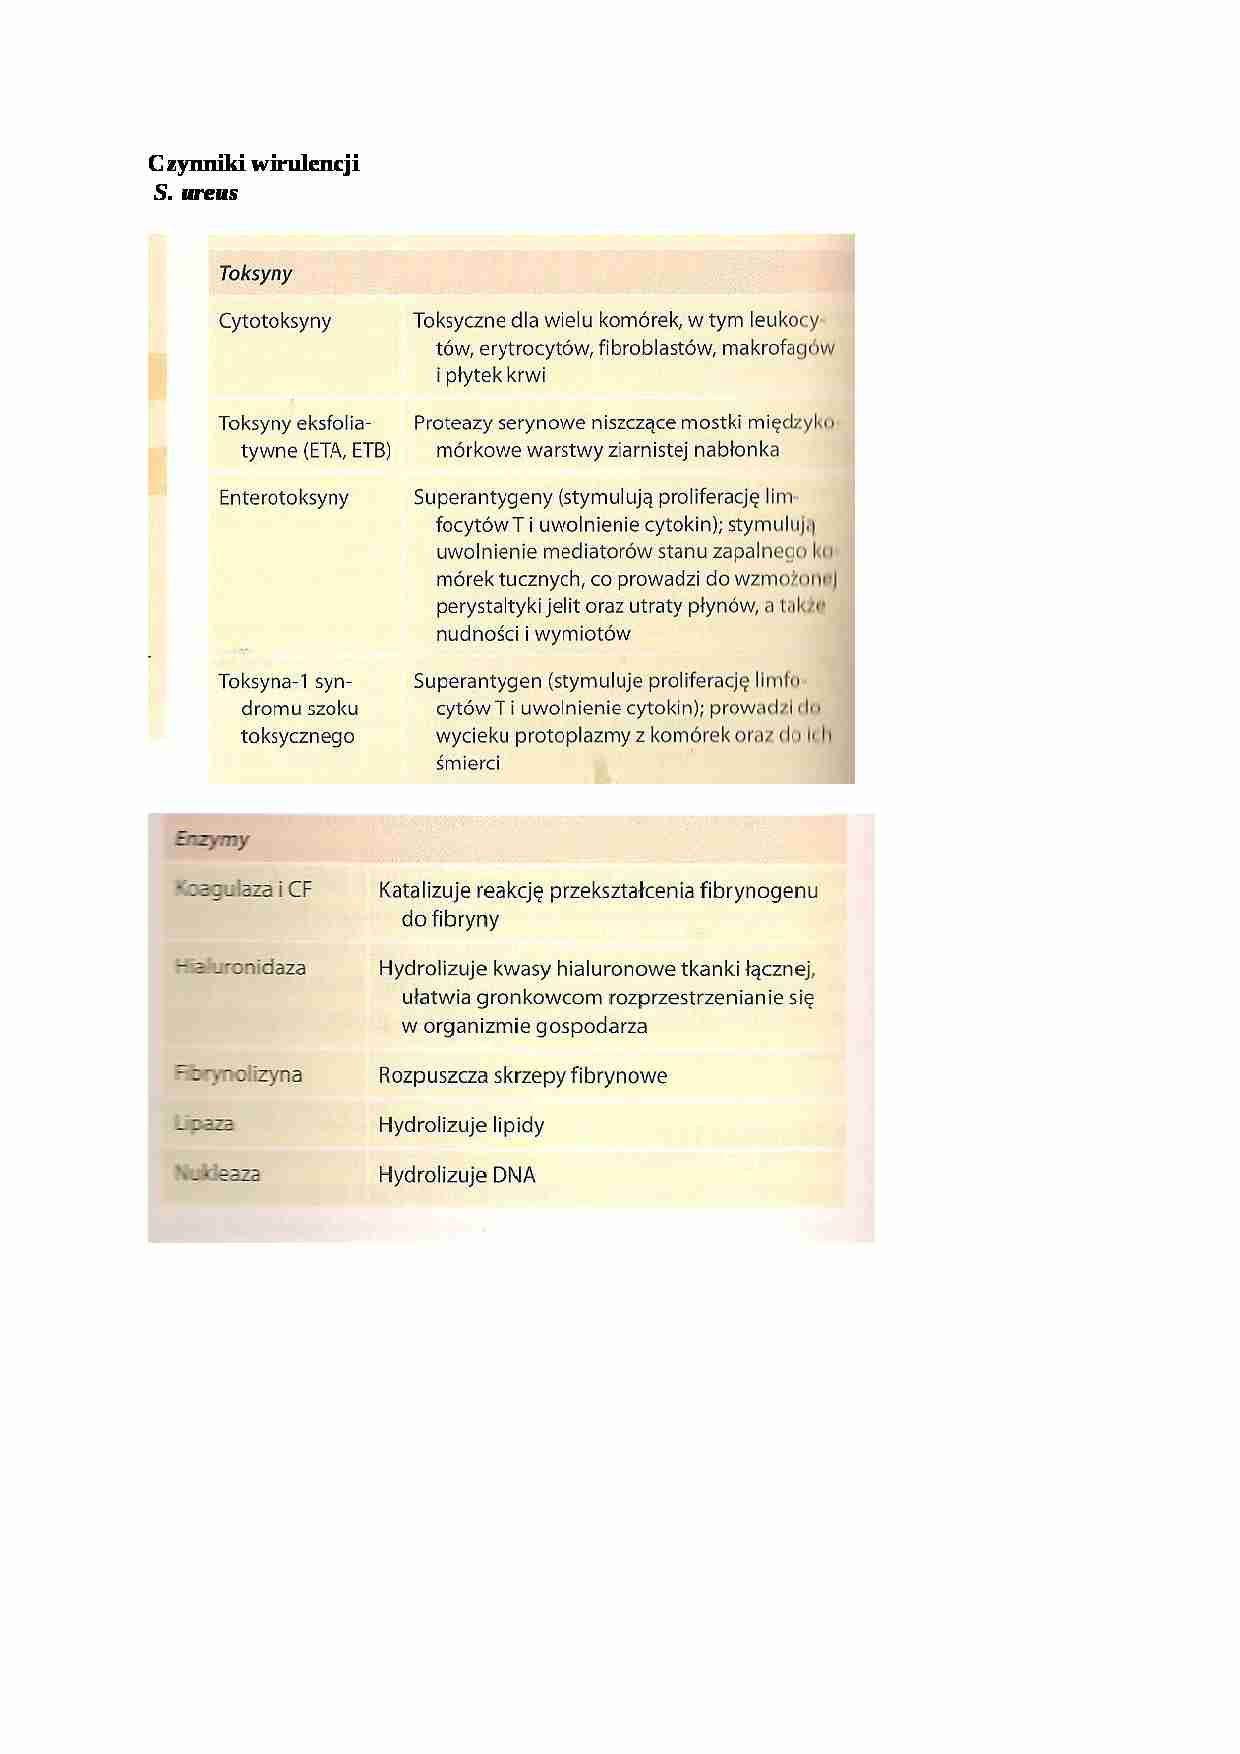 Czynniki wirulencji - omówienie - strona 1